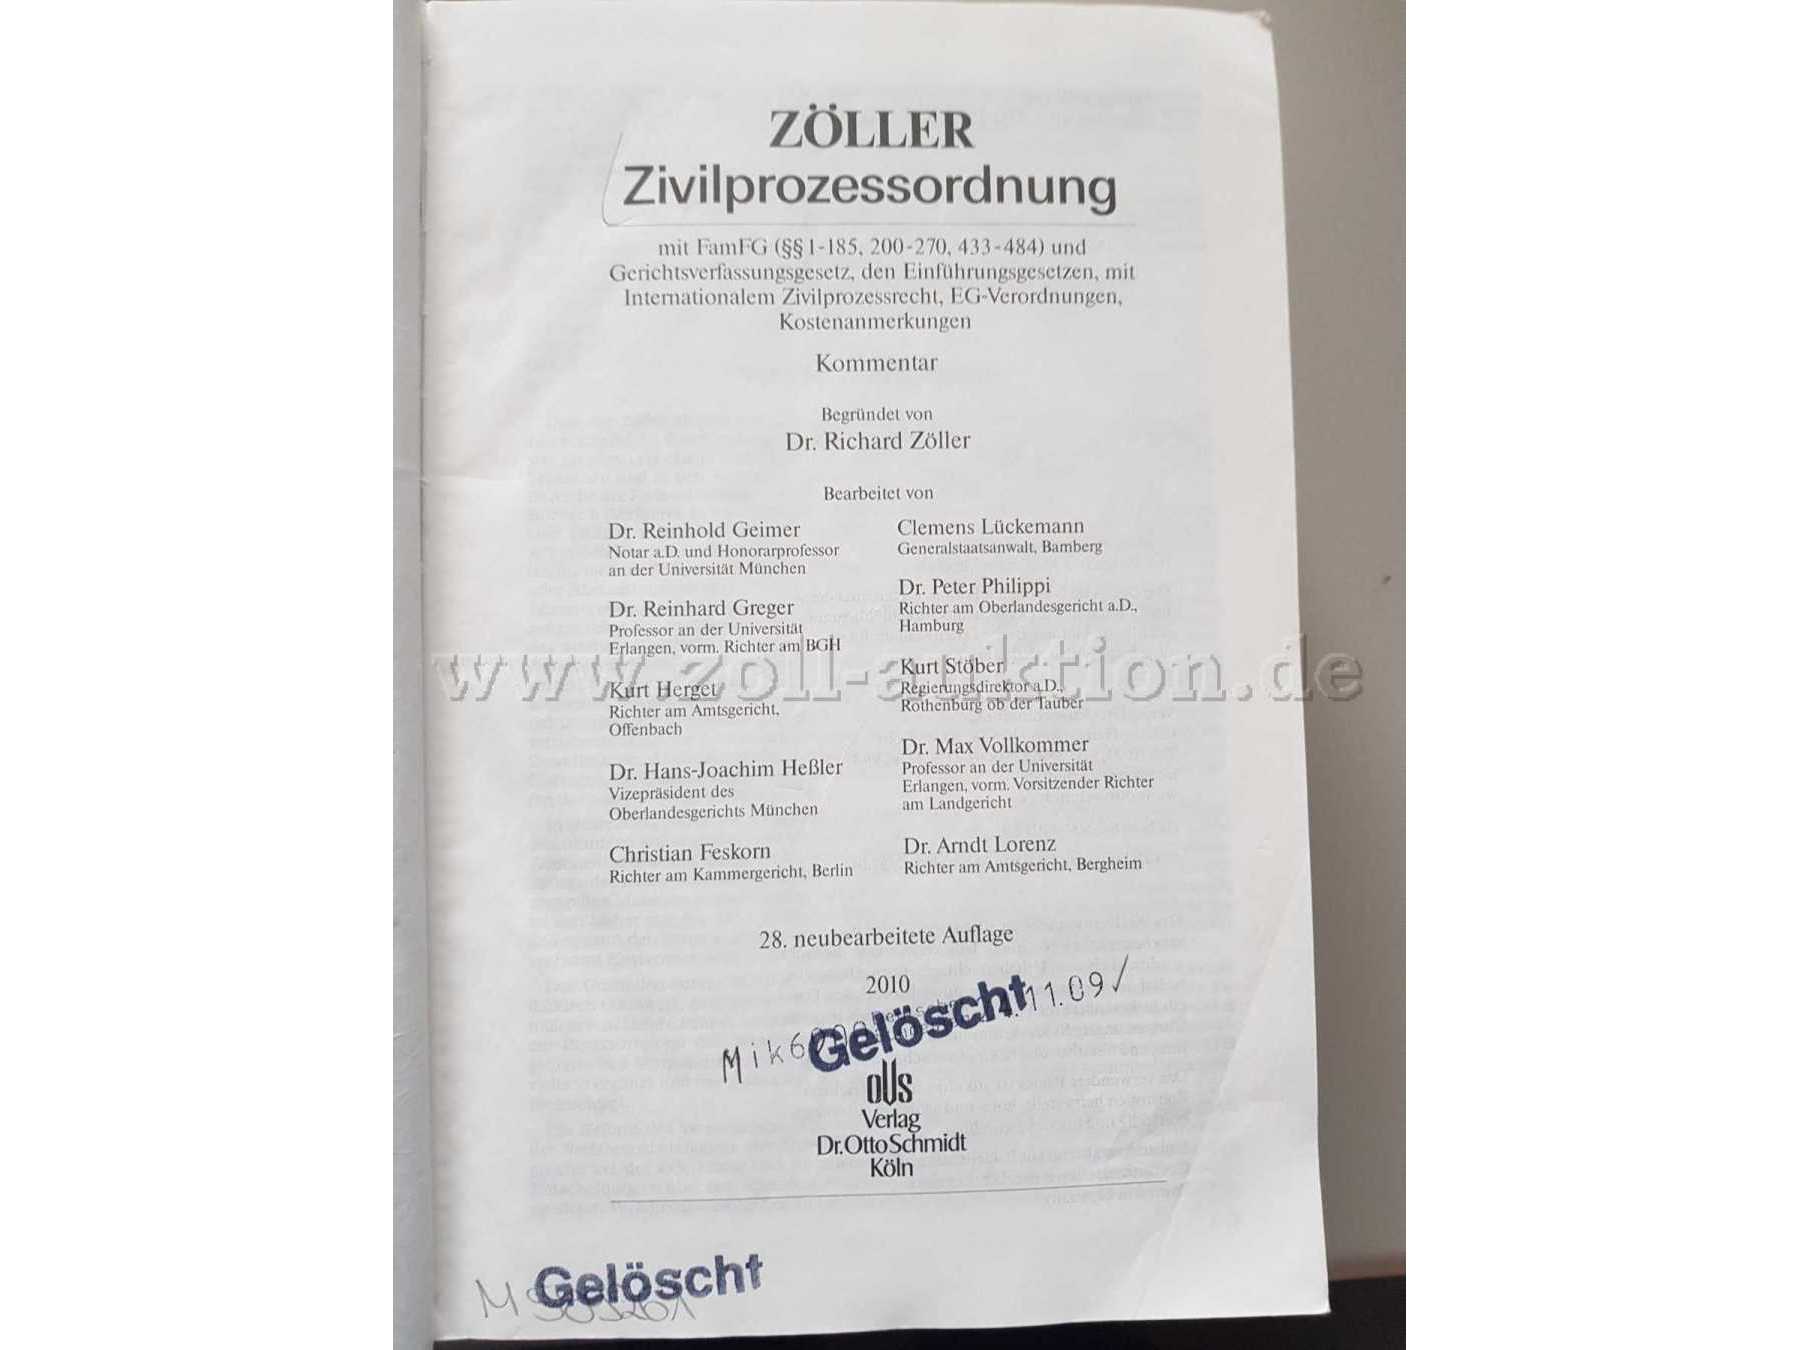 Zivilprozessordnung (Zöller) - Haupttitelseite